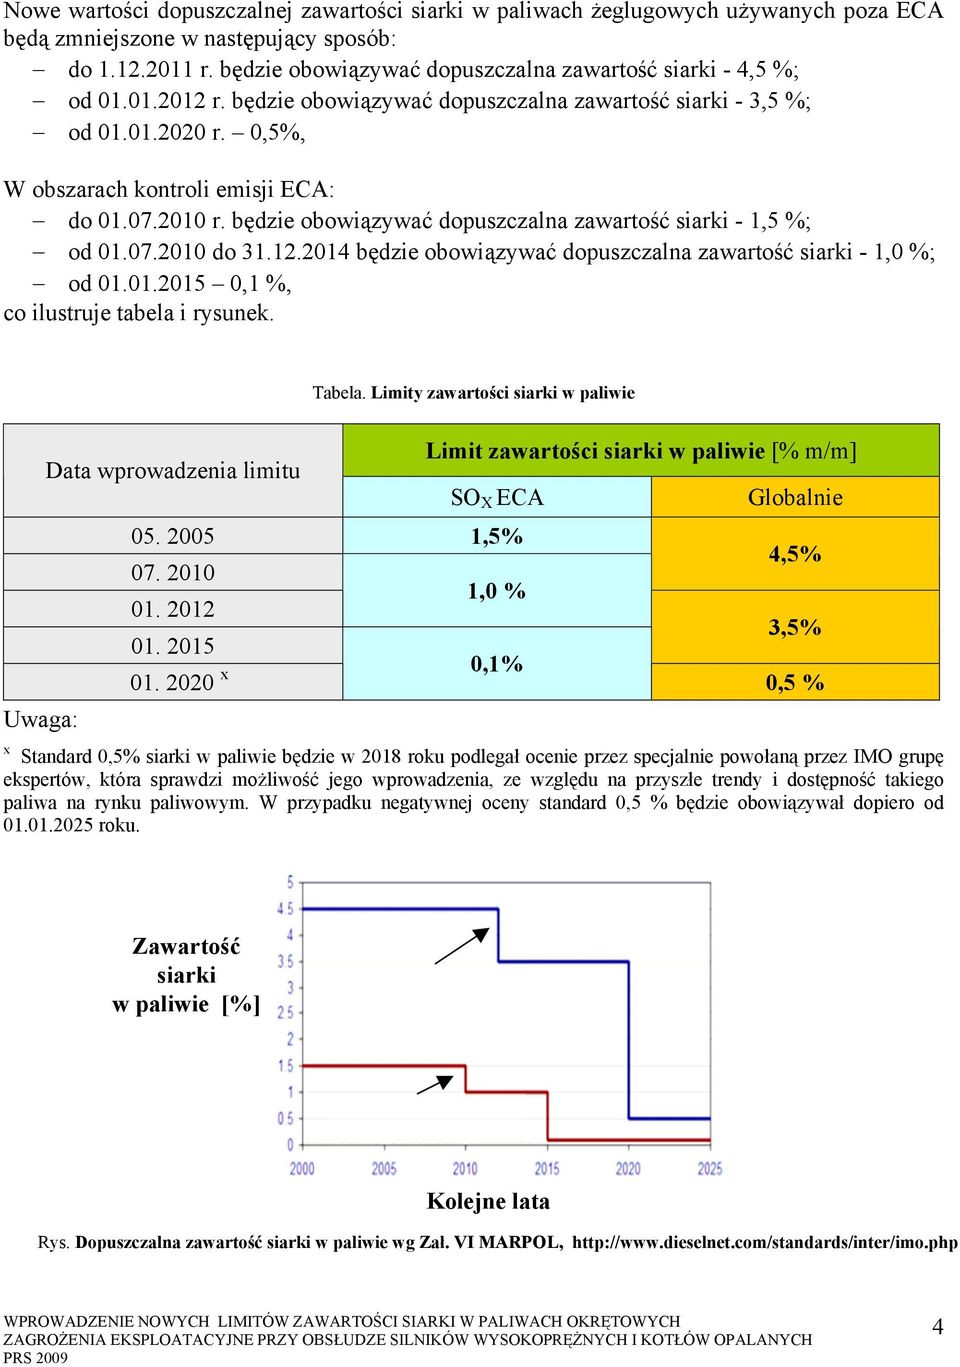 2010 r. będzie obowiązywać dopuszczalna zawartość siarki - 1,5 %; od 01.07.2010 do 31.12.2014 będzie obowiązywać dopuszczalna zawartość siarki - 1,0 %; od 01.01.2015 0,1 %, co ilustruje tabela i rysunek.